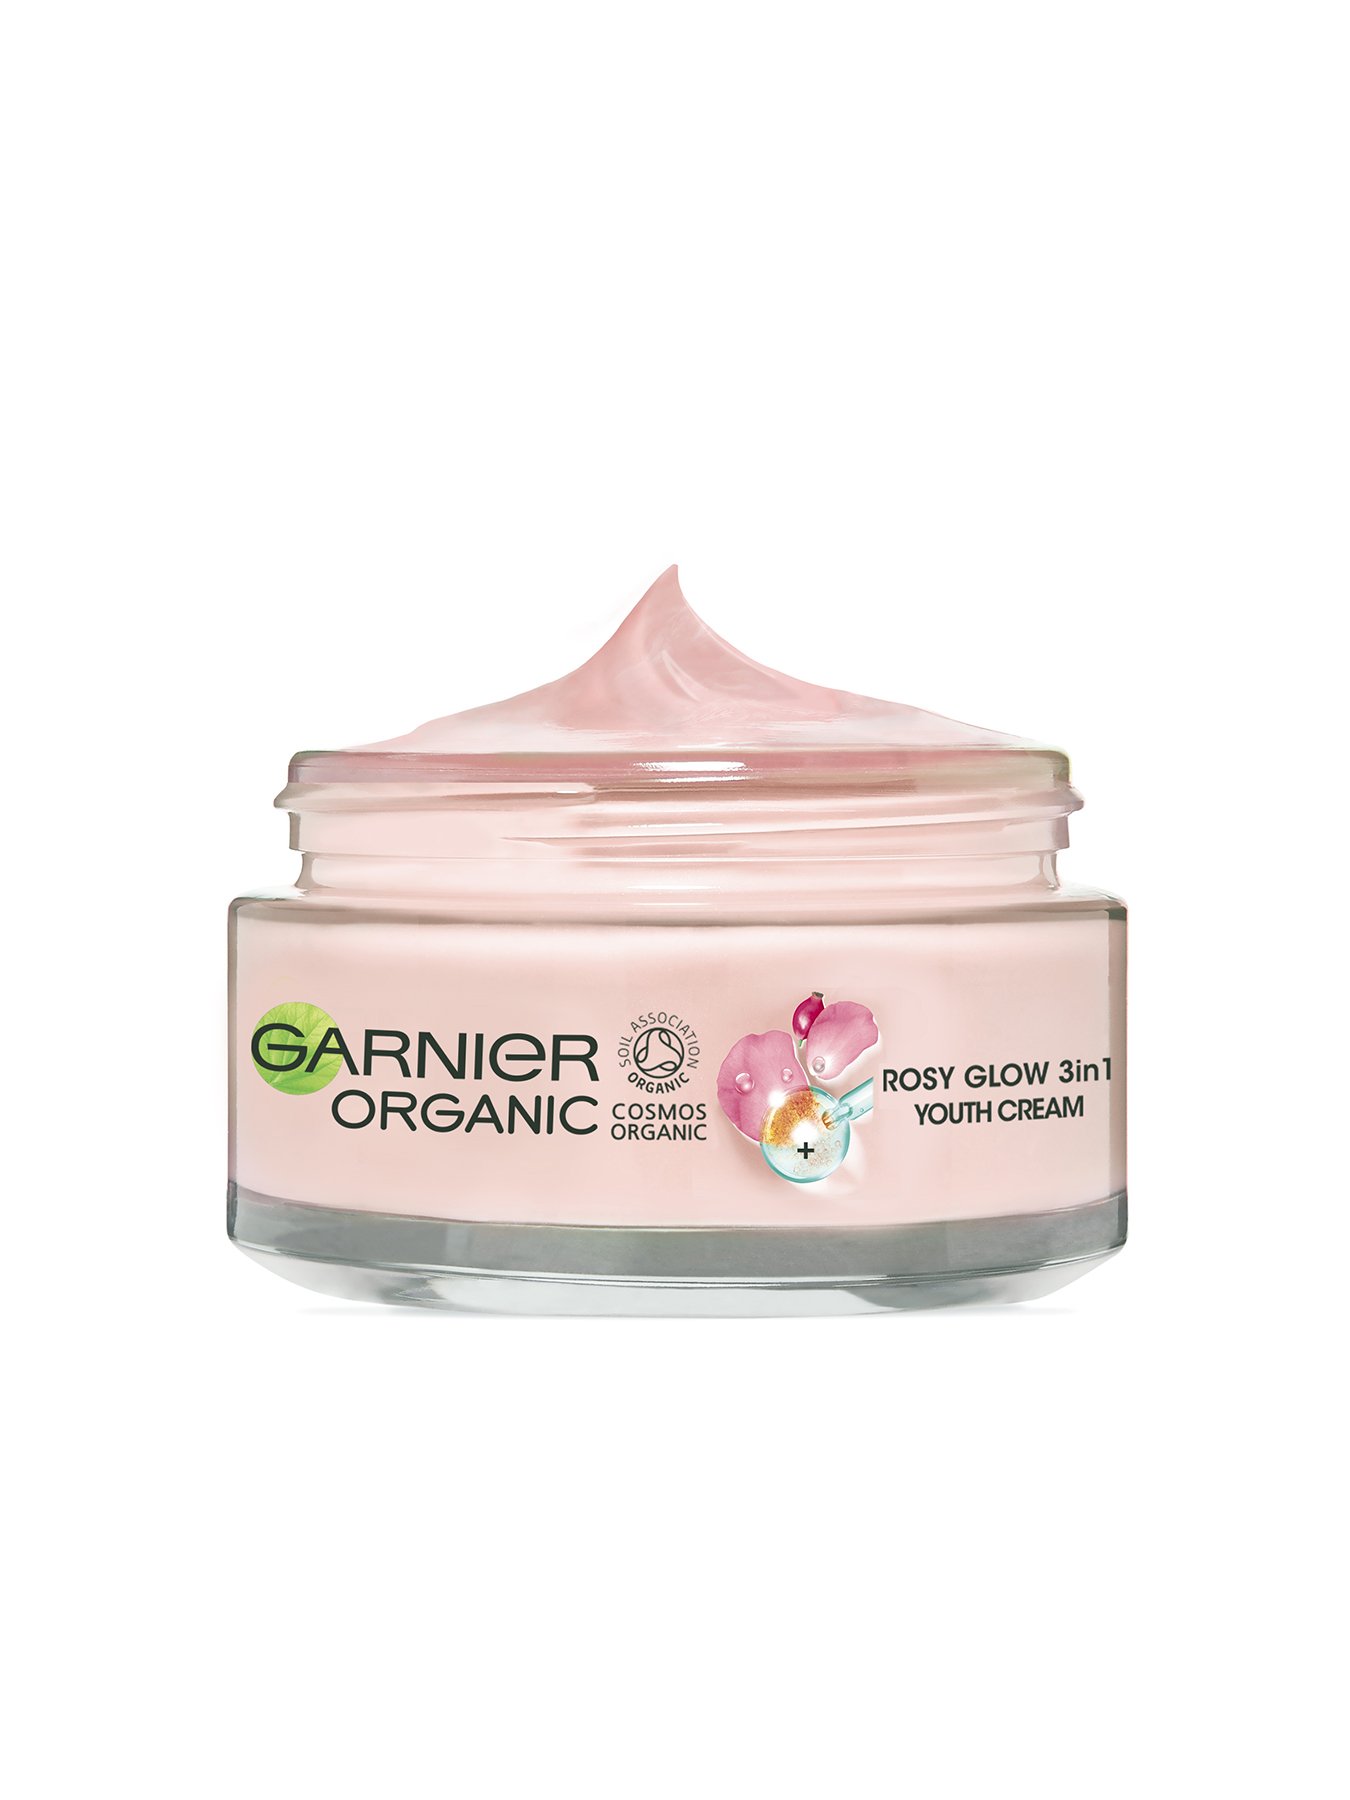 Garnier Organic Rosy Glow 3in1 Youth Cream 50ml tub with lid off